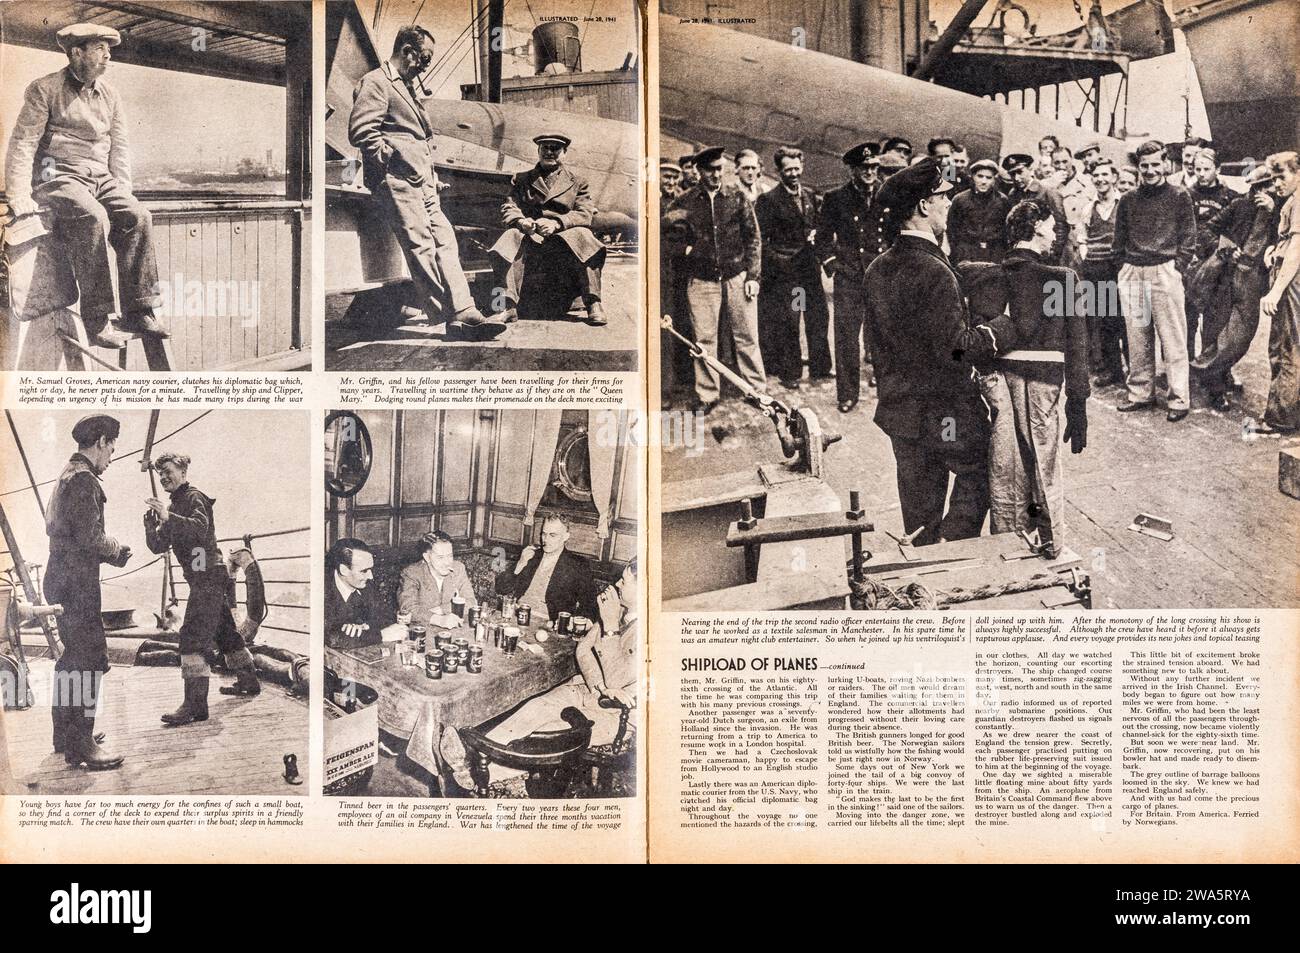 Un articolo della rivista "Illustrated" del 1941, del famoso fotografo di guerra Robert Capa, scritto e fotografato mentre attraversava l'Atlantico per coprire la guerra in Europa. Viaggiò su una nave che trasportava aerei militari americani per l'uso da parte della Gran Bretagna, nell'ambito del piano di Lend-lease - gli Stati Uniti non erano in quel momento coinvolti nella guerra. La storia completa è contenuta nelle immagini 2WA5RHE, 2WA5RMK e 2WA5RYA Foto Stock